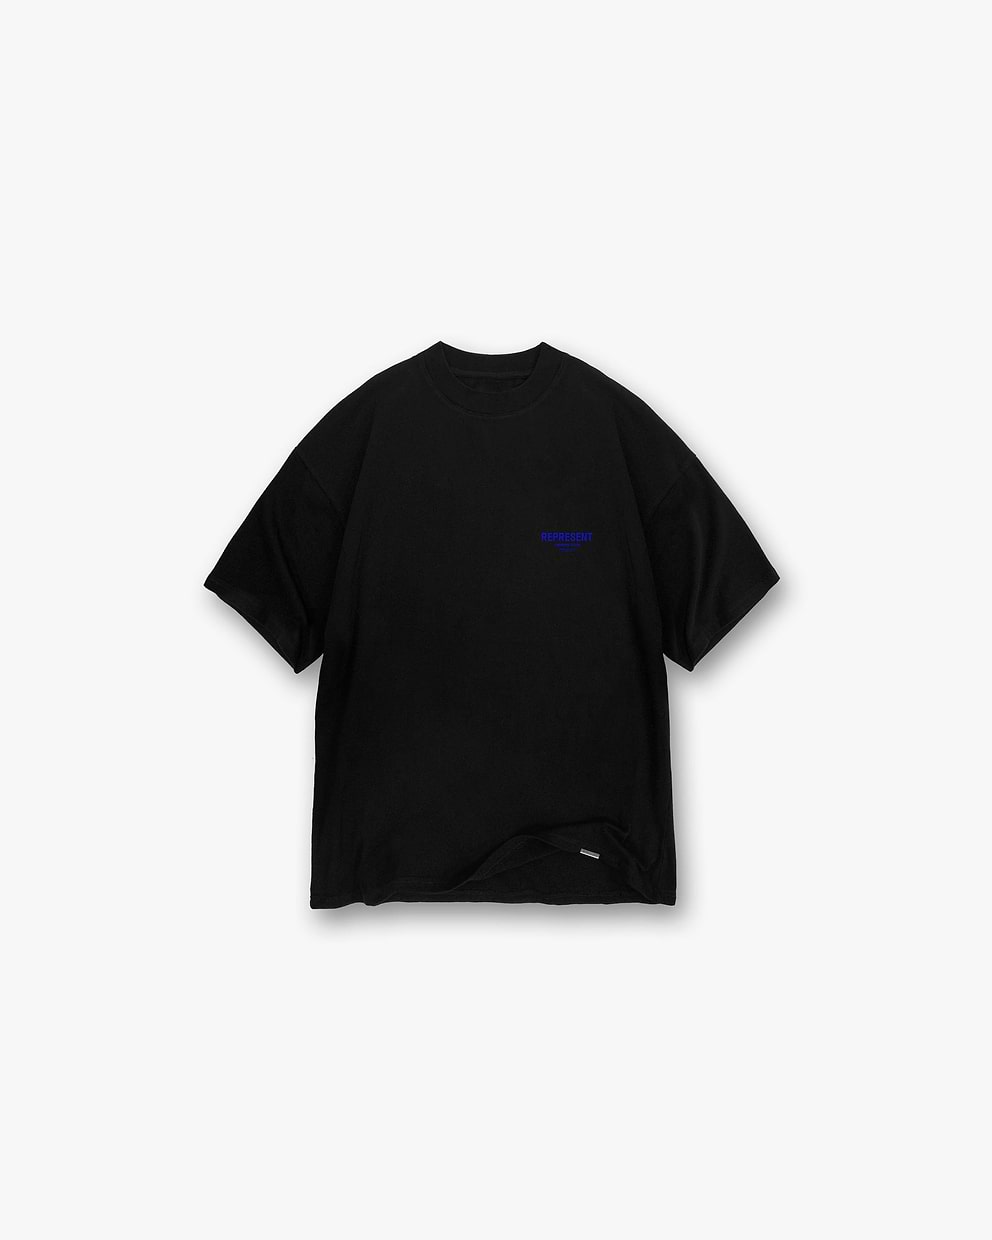 Represent Owners Club T-Shirt - Black Cobalt | REPRESENT CLO